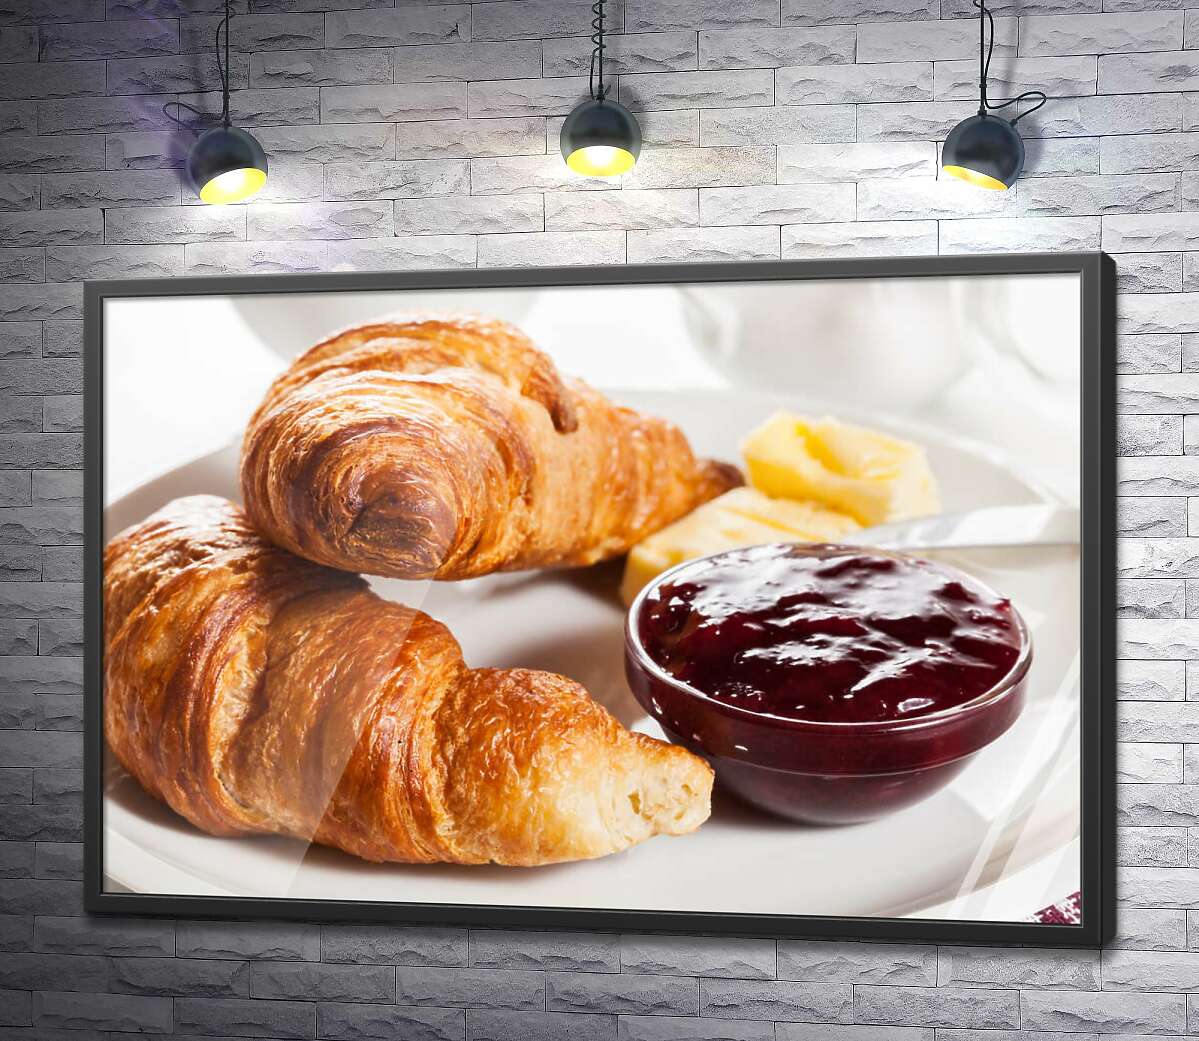 постер Завтрак по-французски: хрустящие круассаны с нежным маслом и сладким джемом